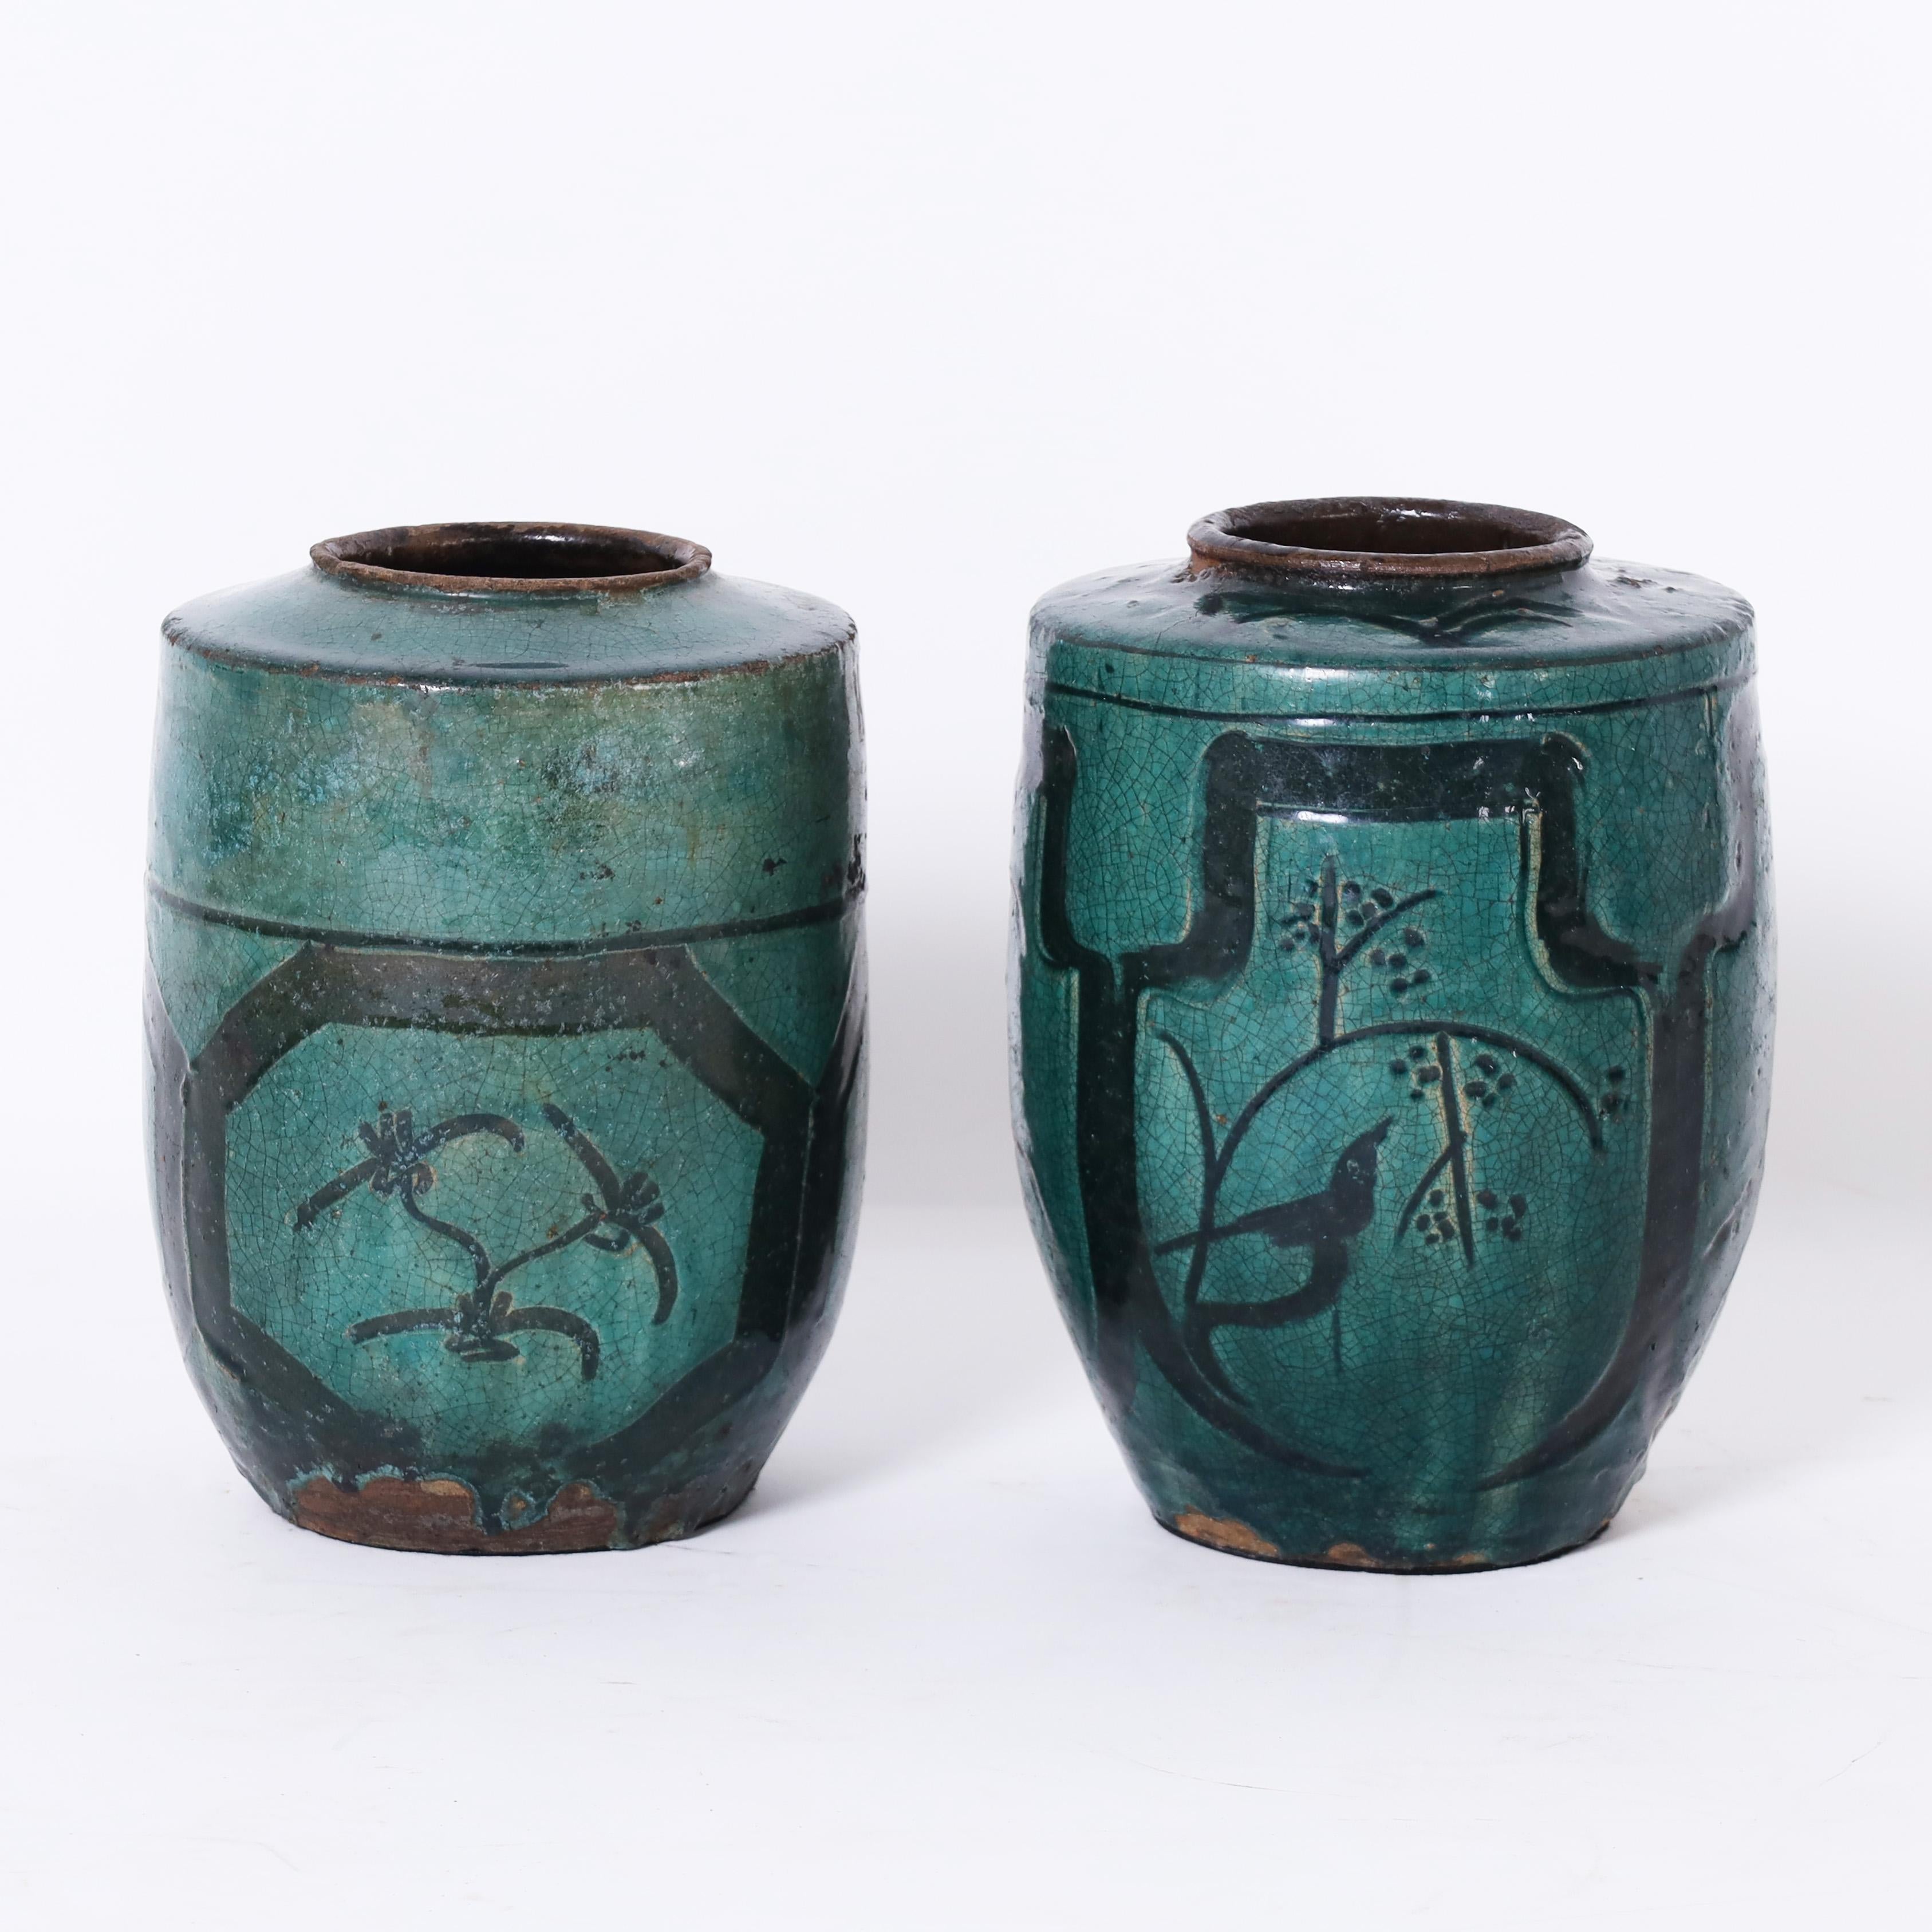 Seltenes und ungewöhnliches Paar persischer Vasen aus dem 18. Jahrhundert, handgefertigt aus Terrakotta und verziert mit Vögeln, Blumen und einem unkonventionellen asiatischen Motiv, dann glasiert, jetzt mit Craquelé und perfekt gealtert.